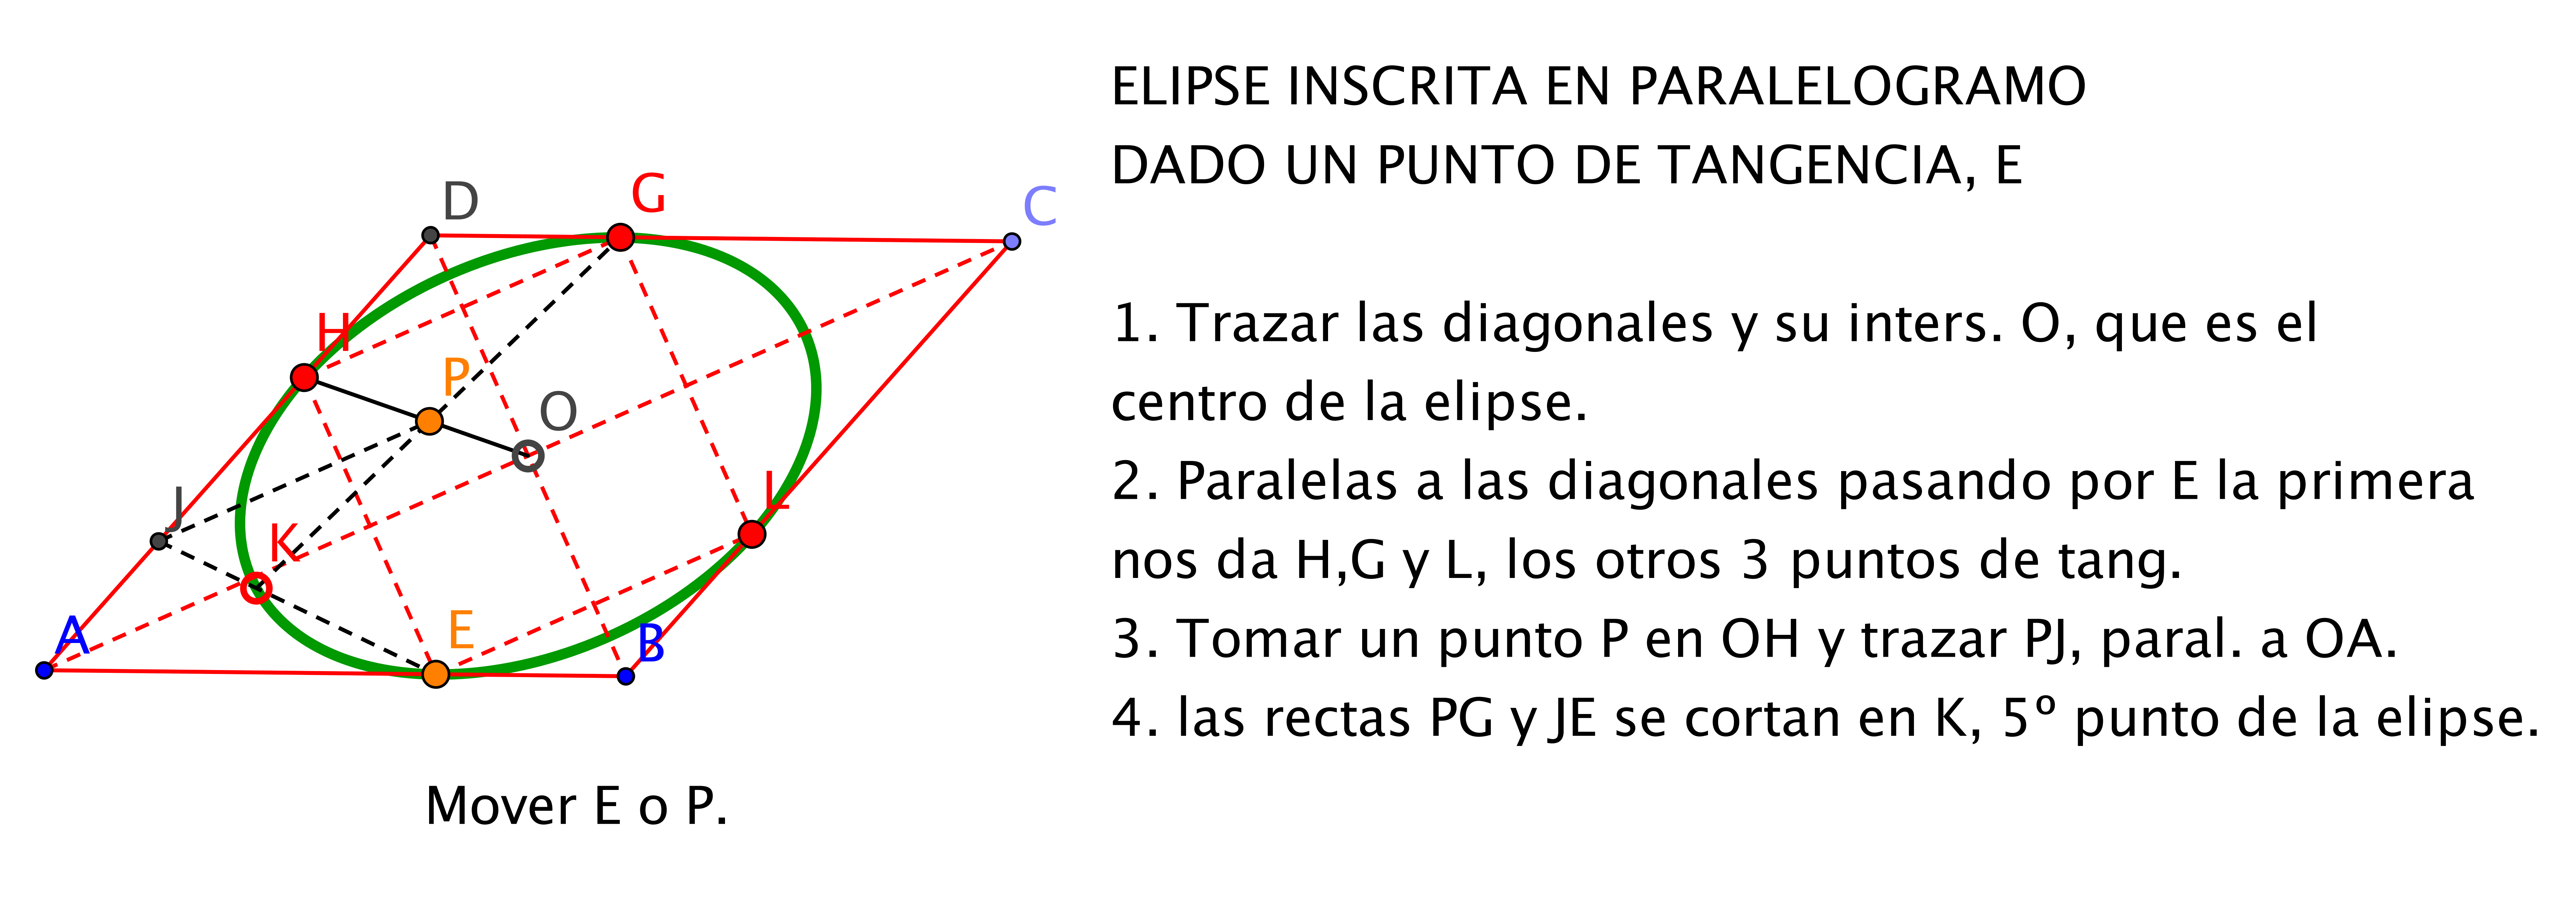 Elipse_inscrita-en_paralelogramo_dado_un_punto_de_tangencia.png